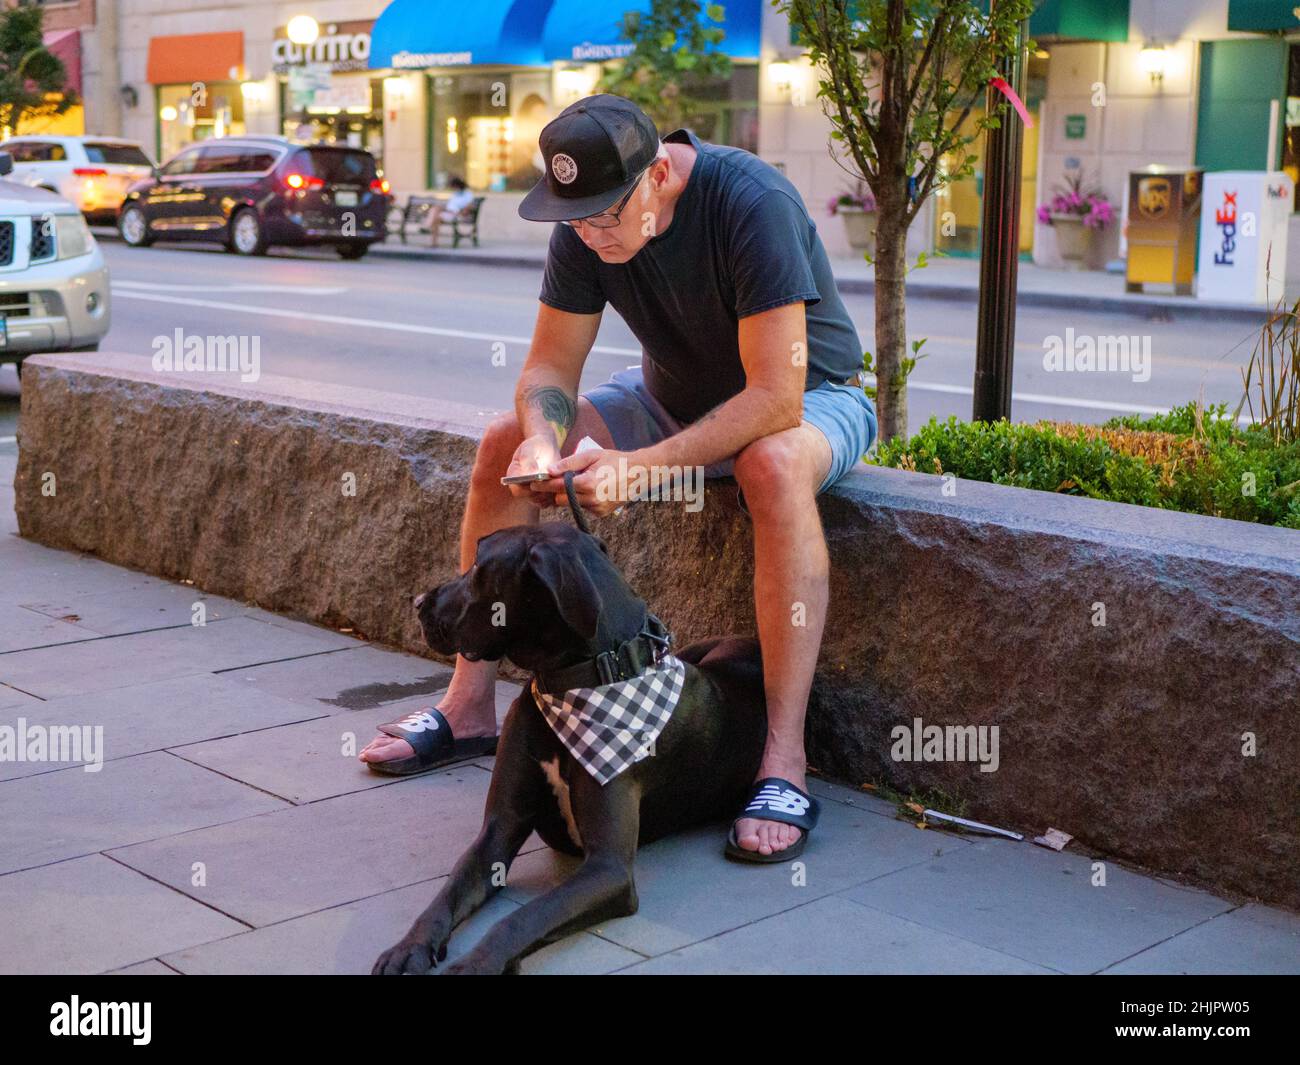 Homme lisant un téléphone portable pendant que son chien attend patiemment. Banque D'Images